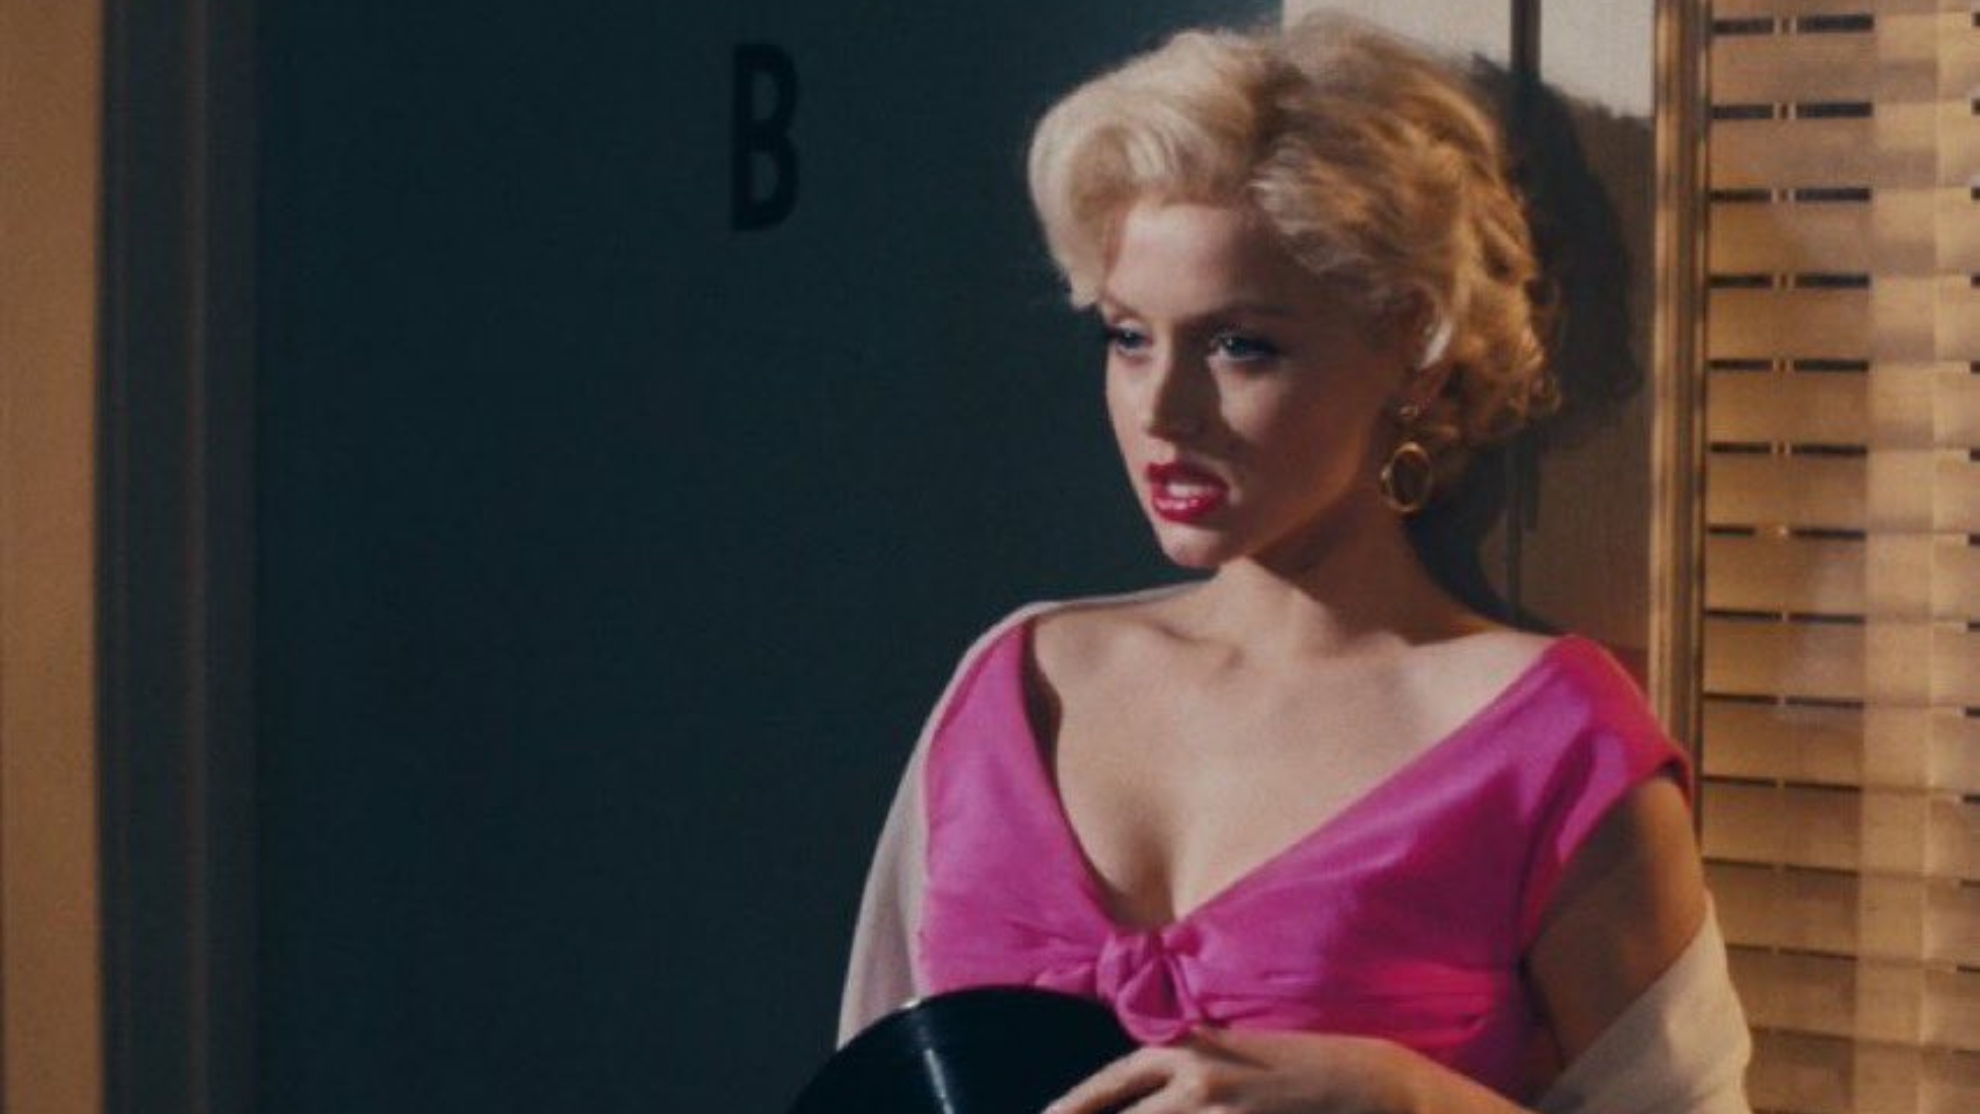 Badwap Xxx New Rap - Ana de Armas' 'Blonde' film has movie critics refusing to review it: 'It's  violent rape porn' | Marca